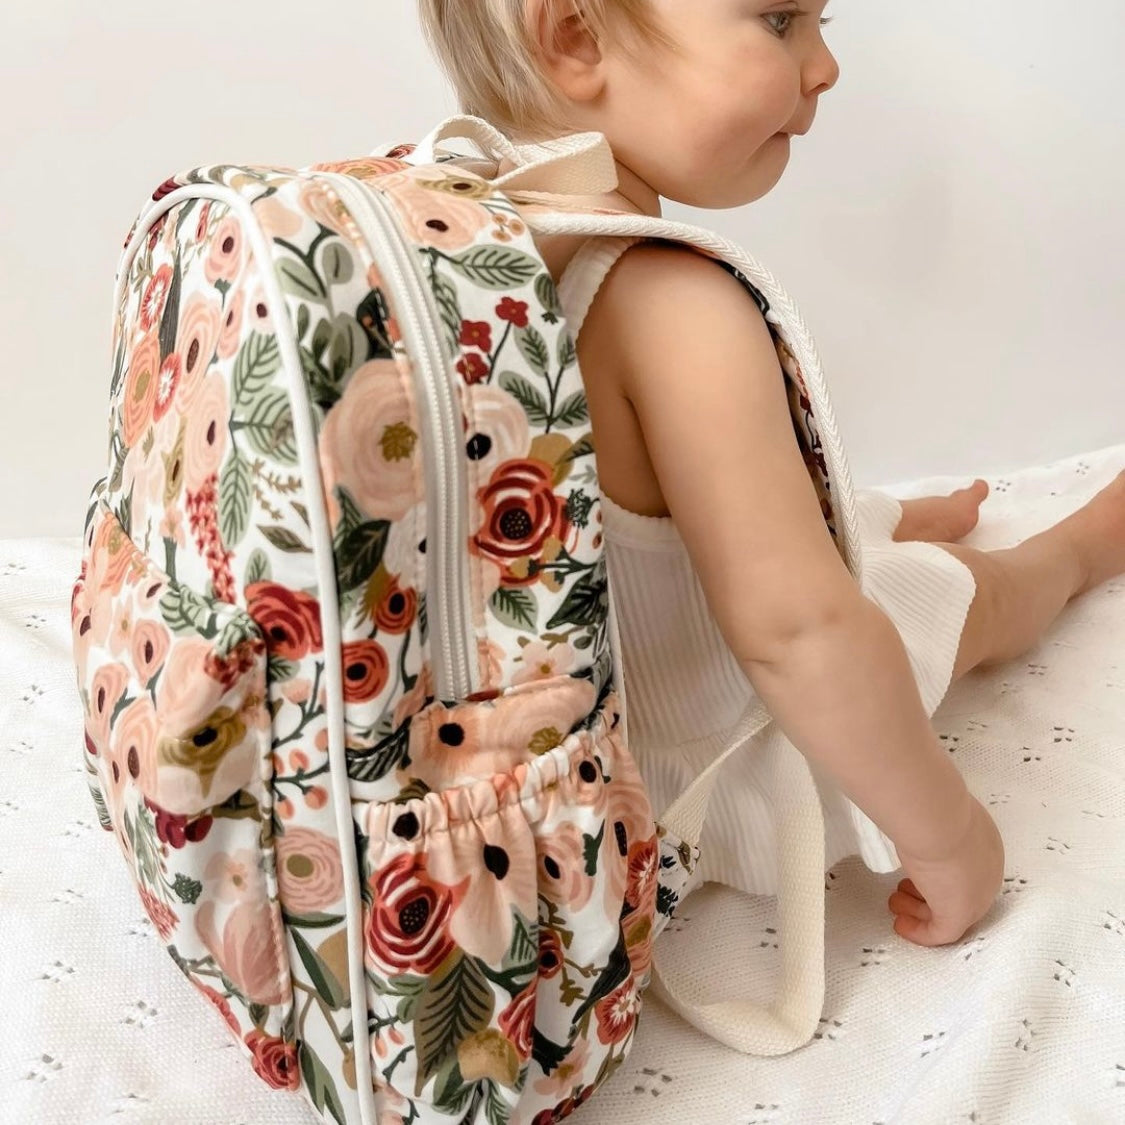 [March Pre-Order] Rosalie Kids Backpack